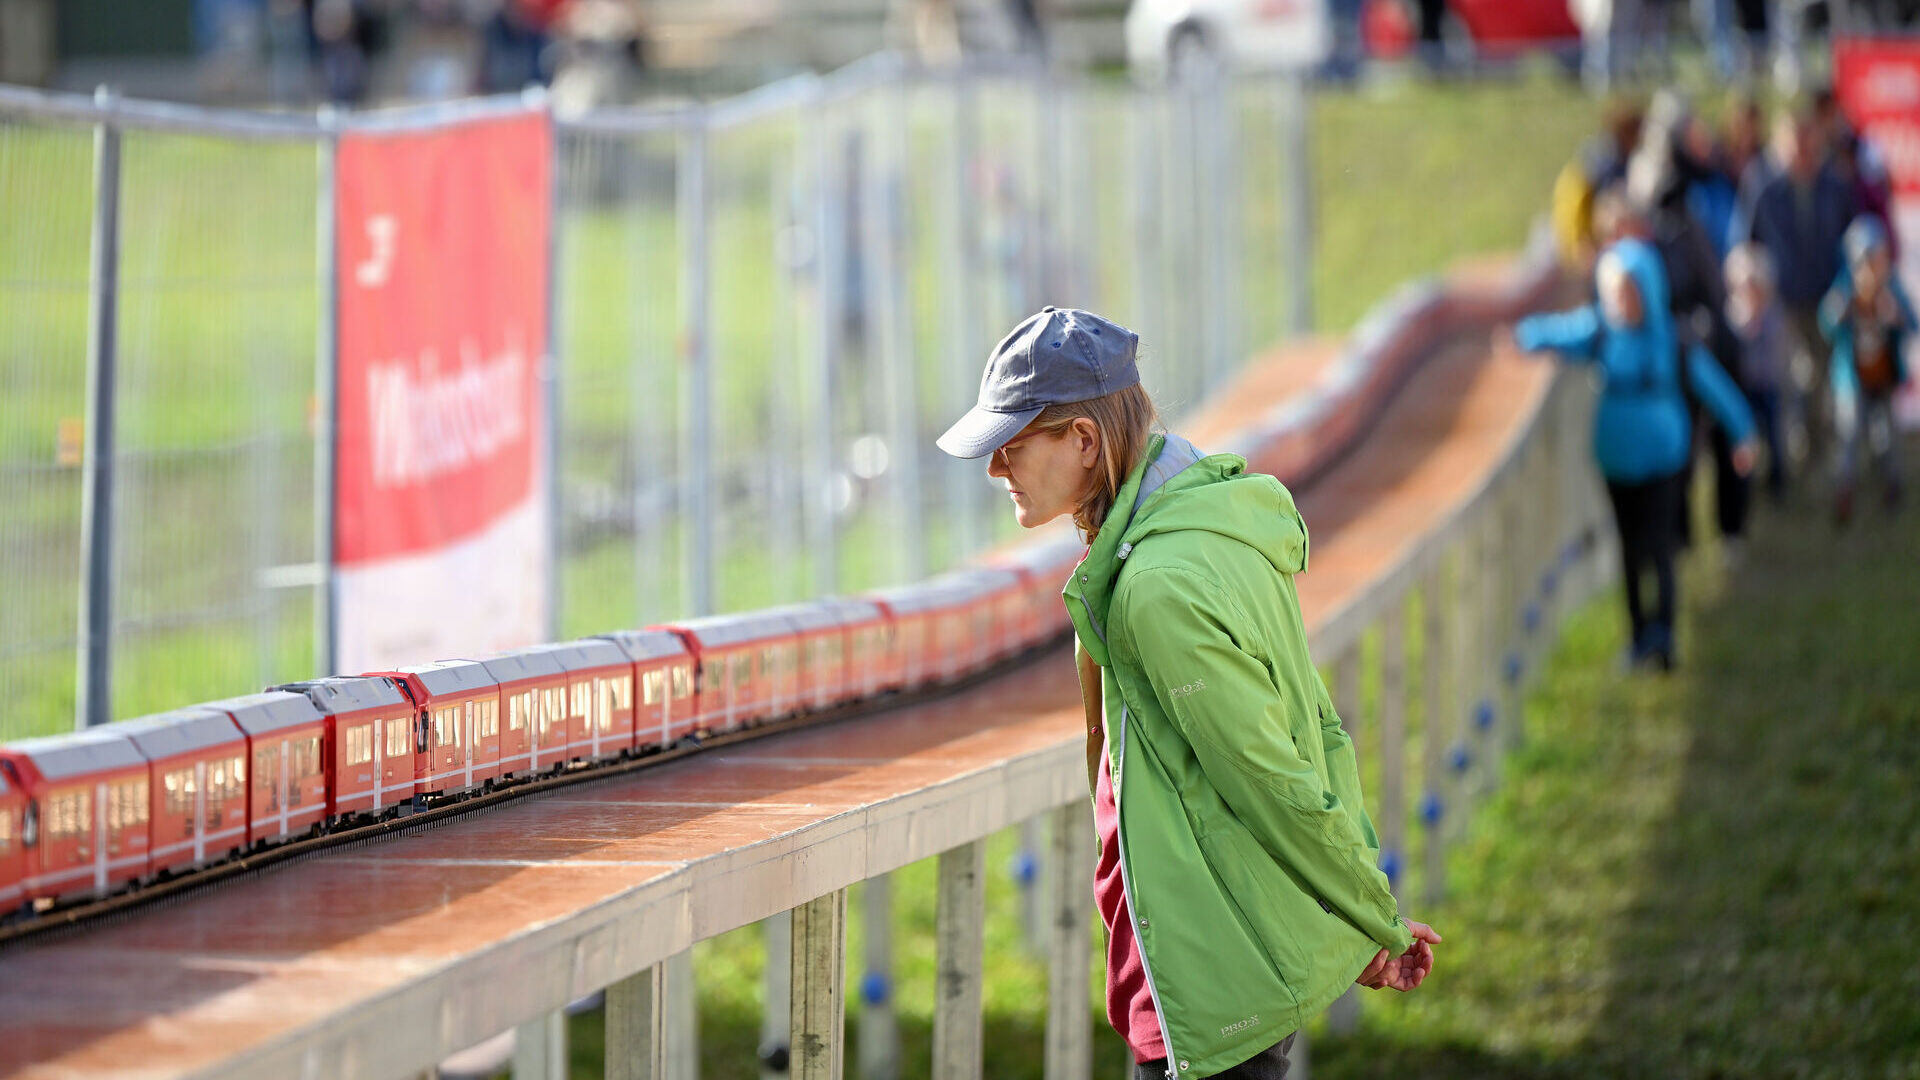 Заходи для громадськості Граубюндена під час рекорду найдовшого вузькоколійного поїзда у світі Ретійської залізниці